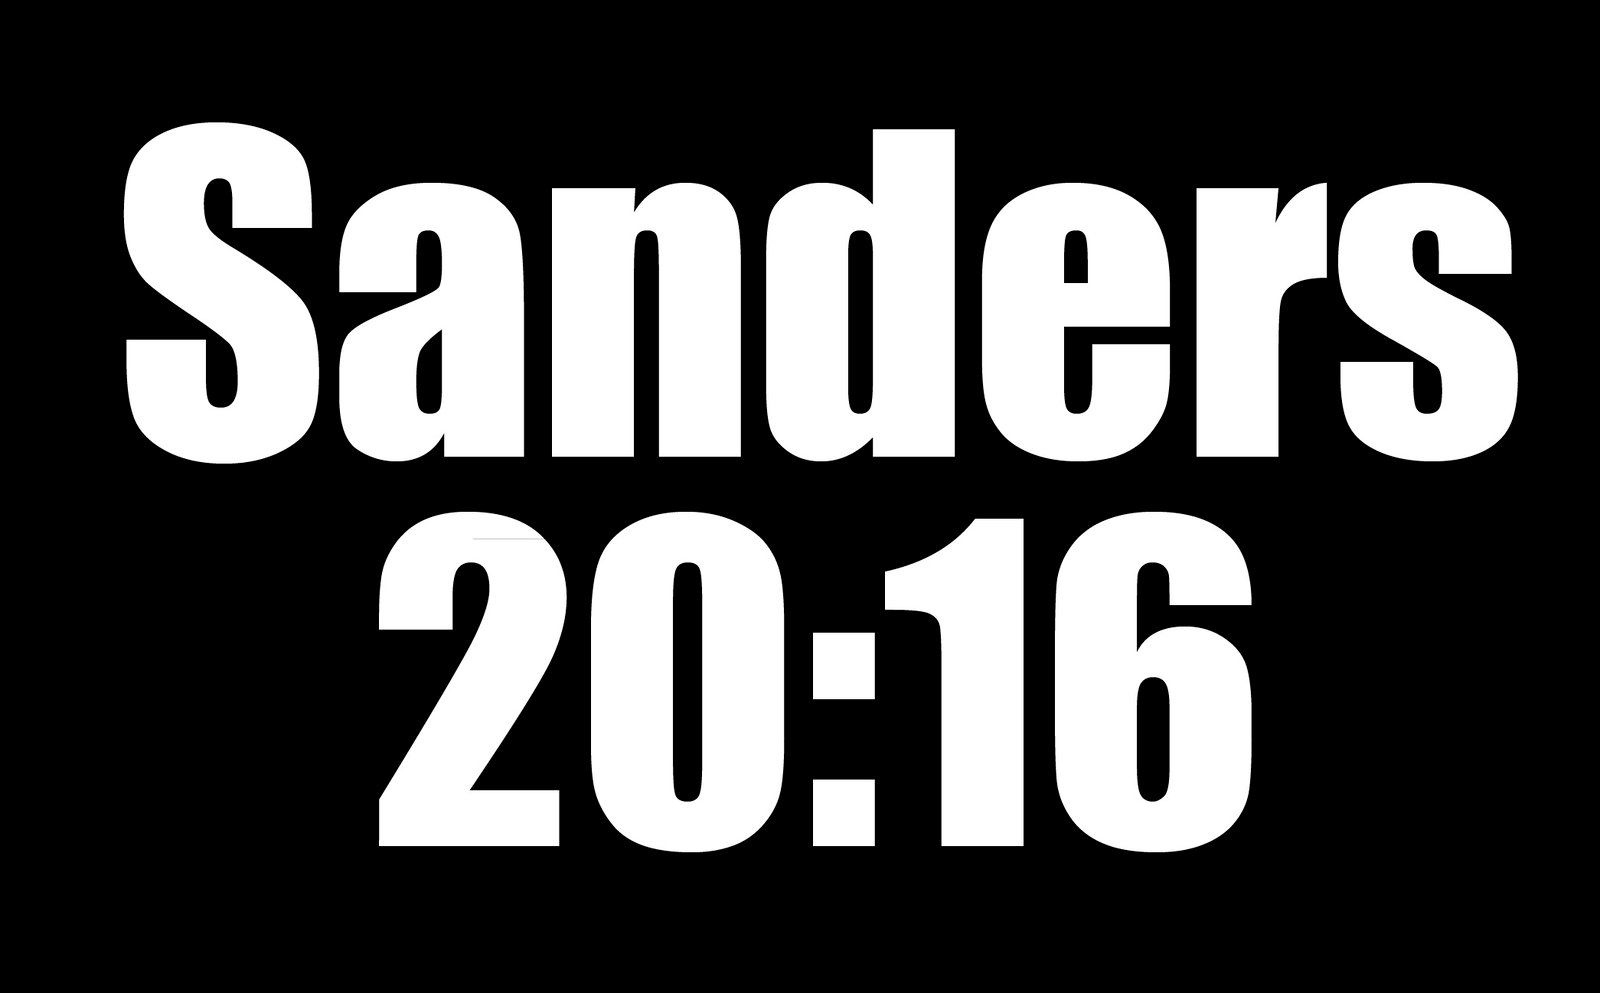 Sanders 2016